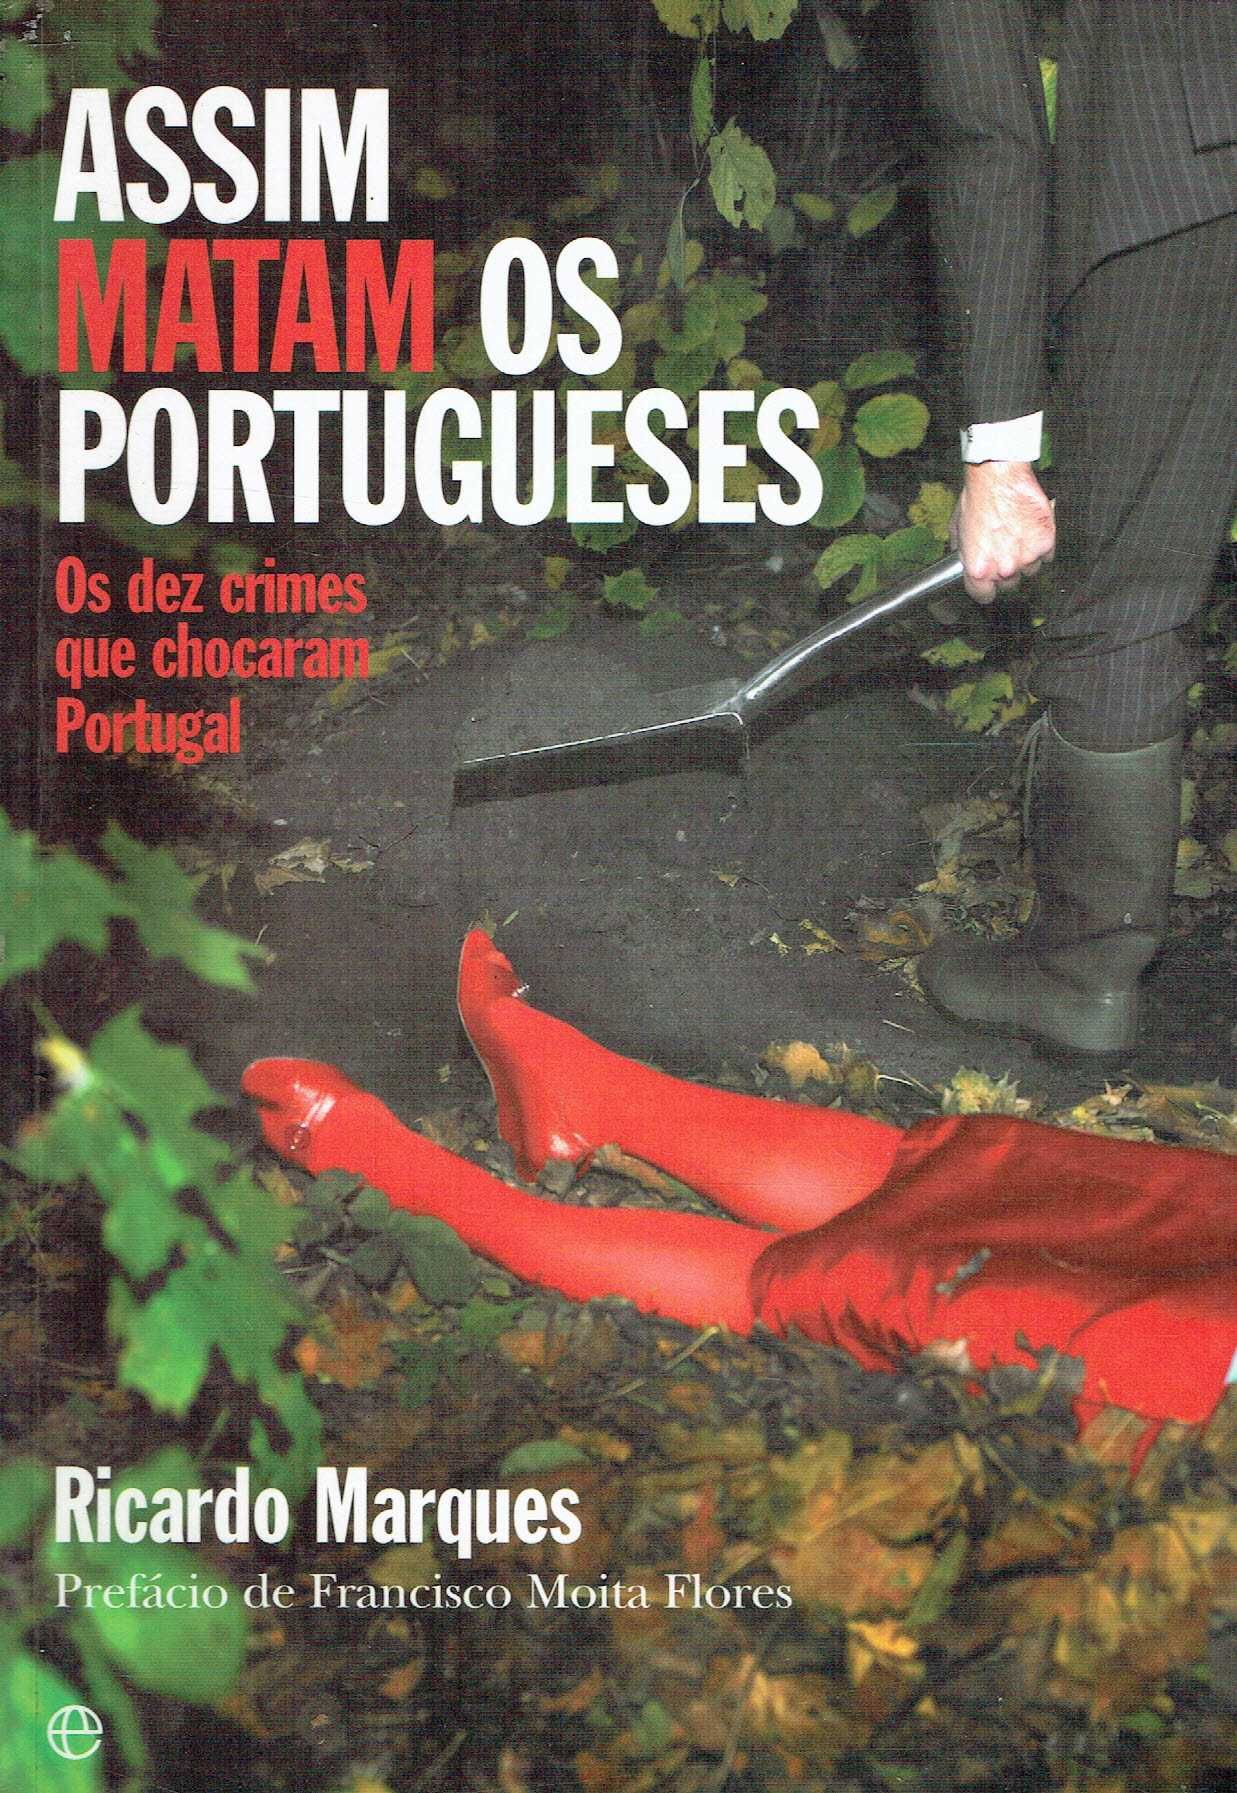 13729
Assim Matam os Portugueses

Ricardo Marques